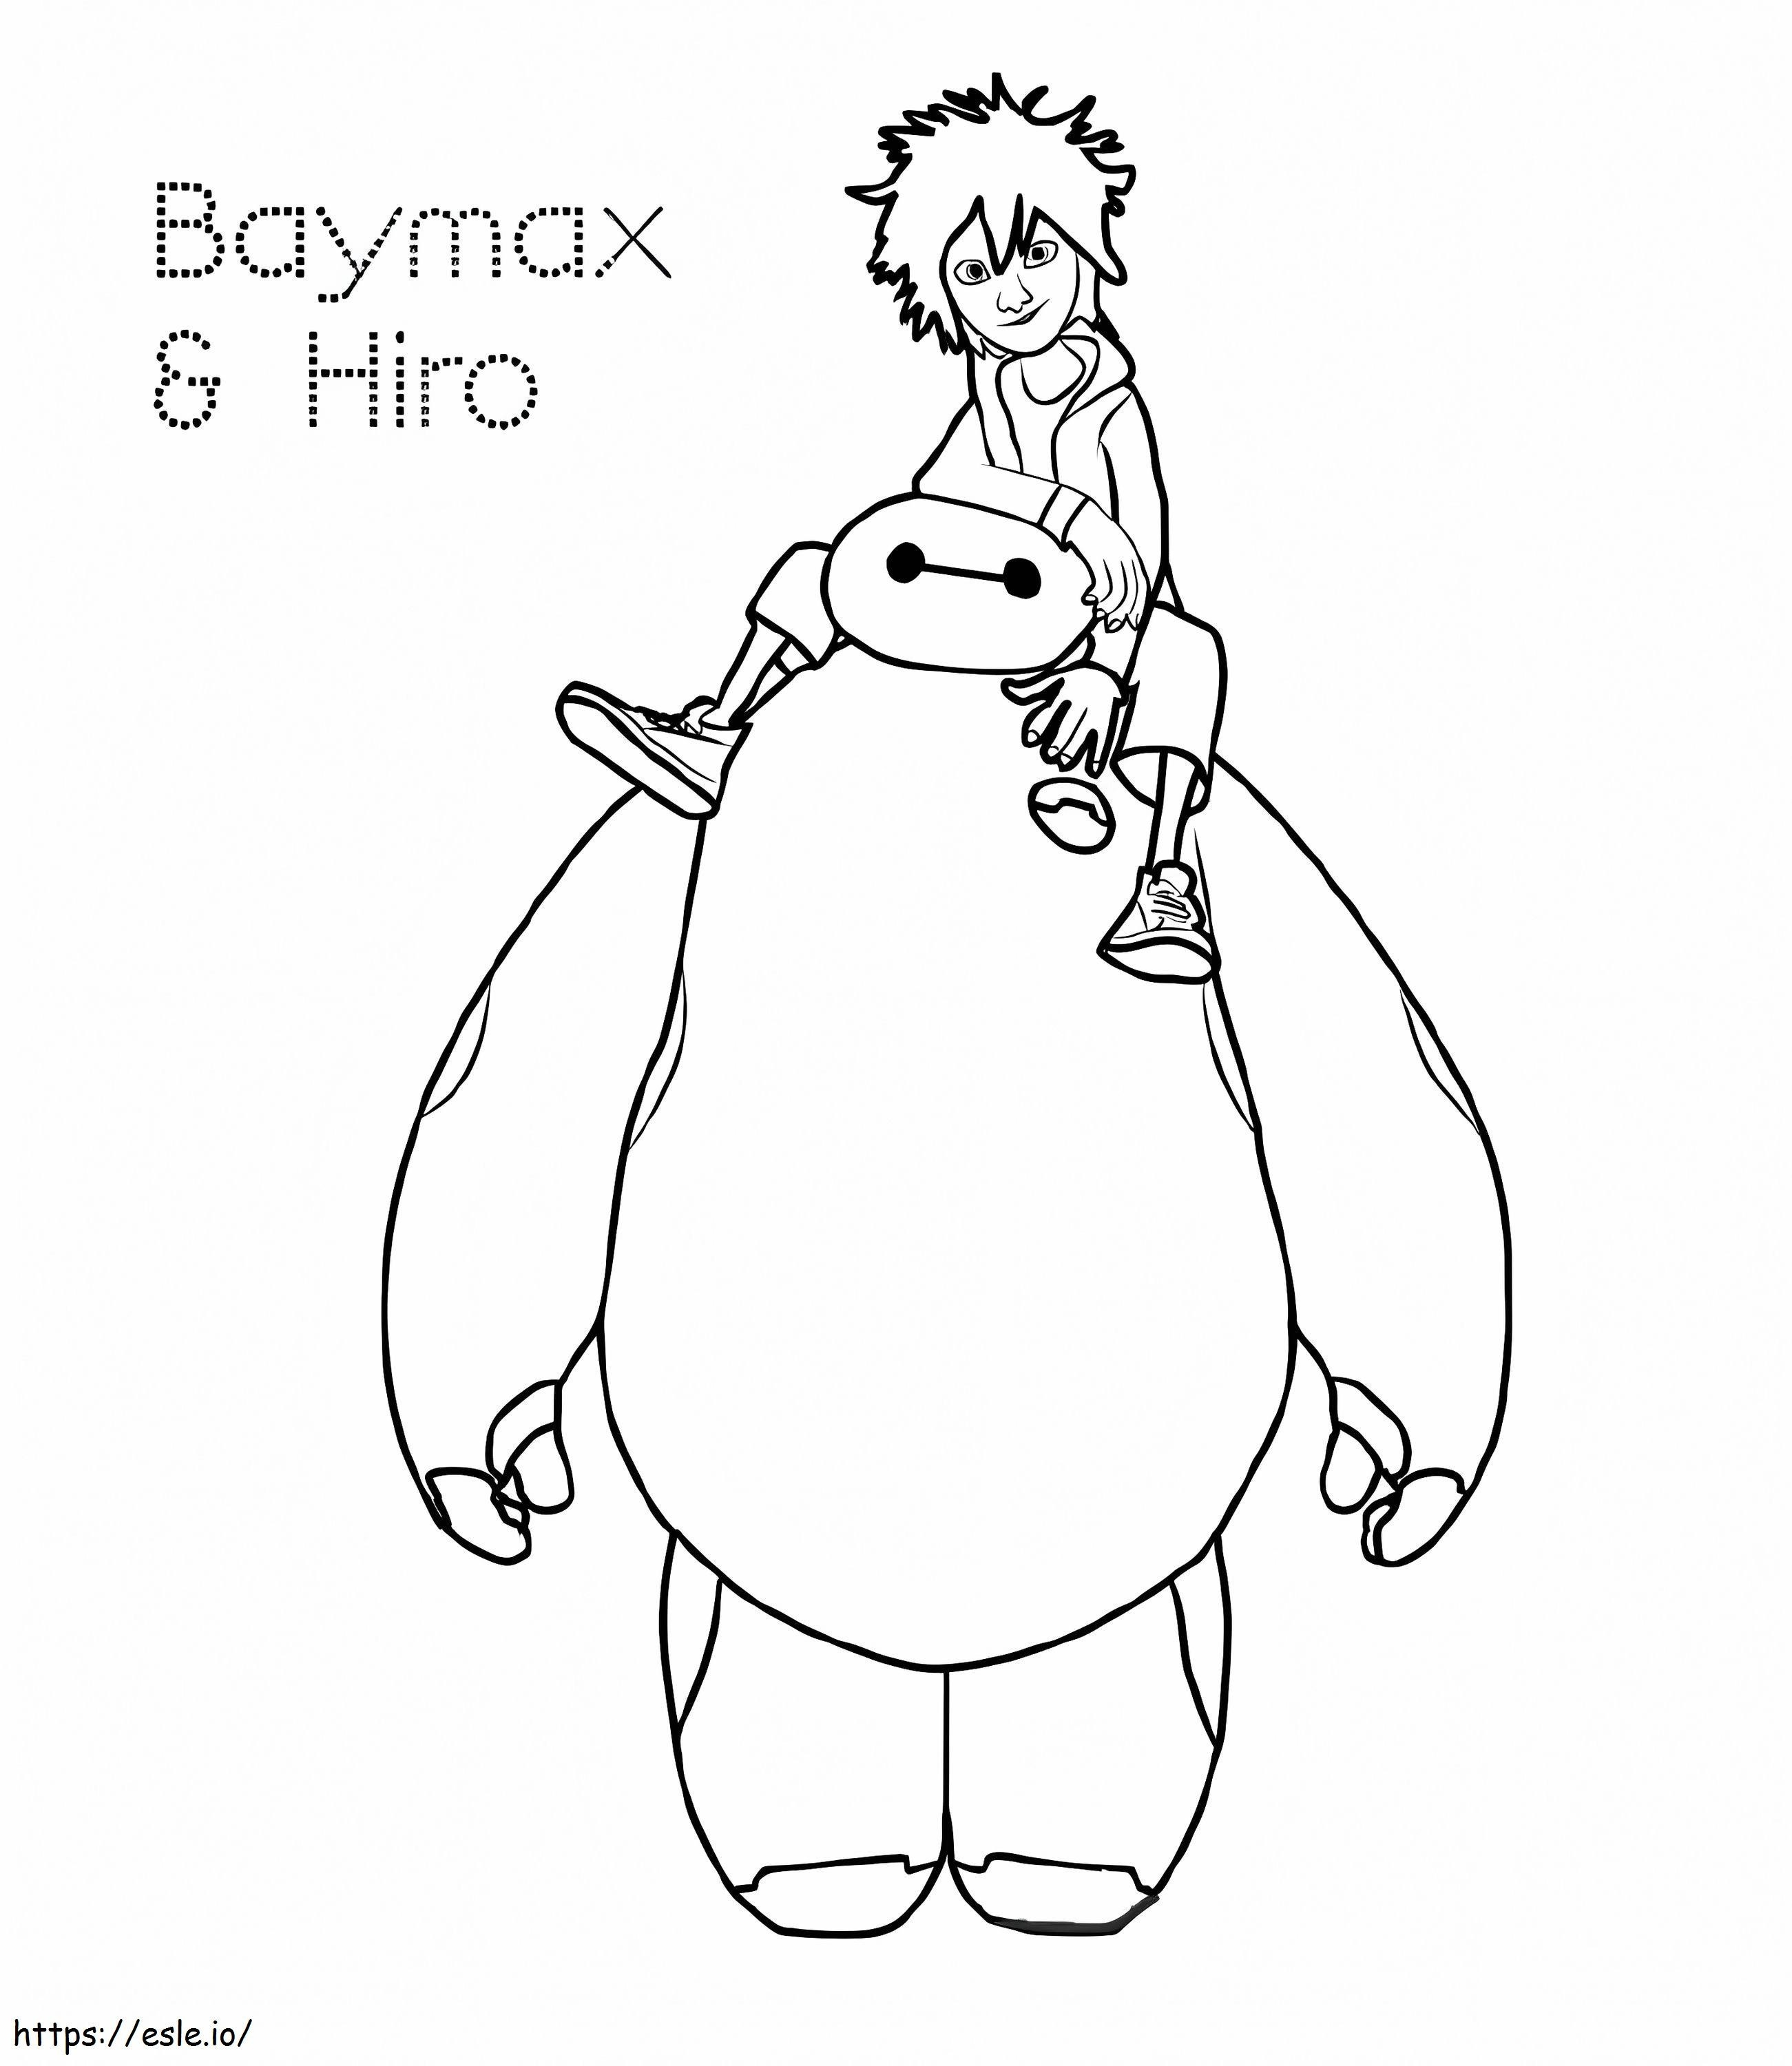 Hiro és Baymax kifestő